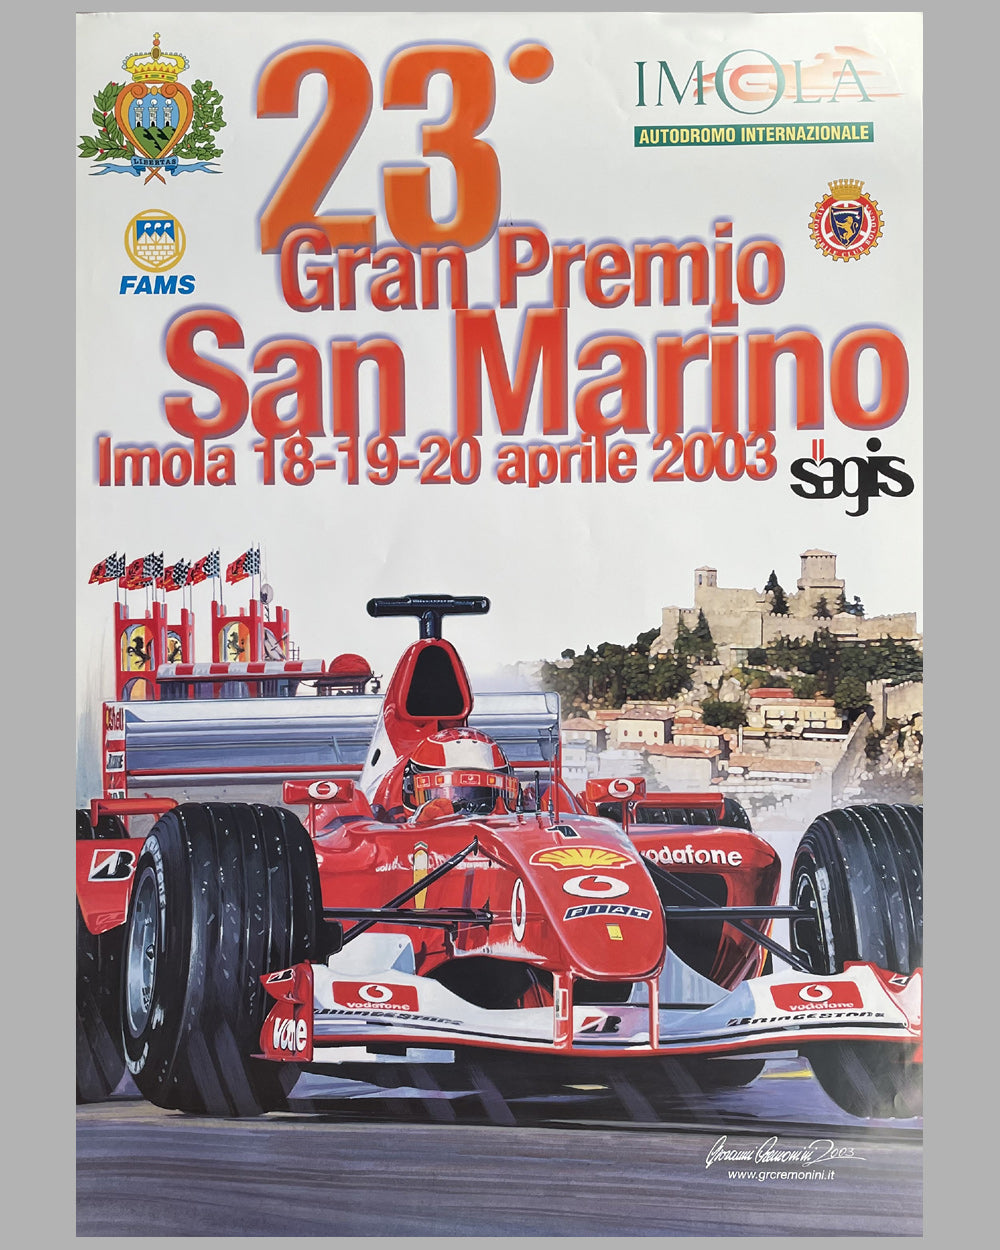 2003 Grand Prix of San Marino original poster by Giovanni Cremonini